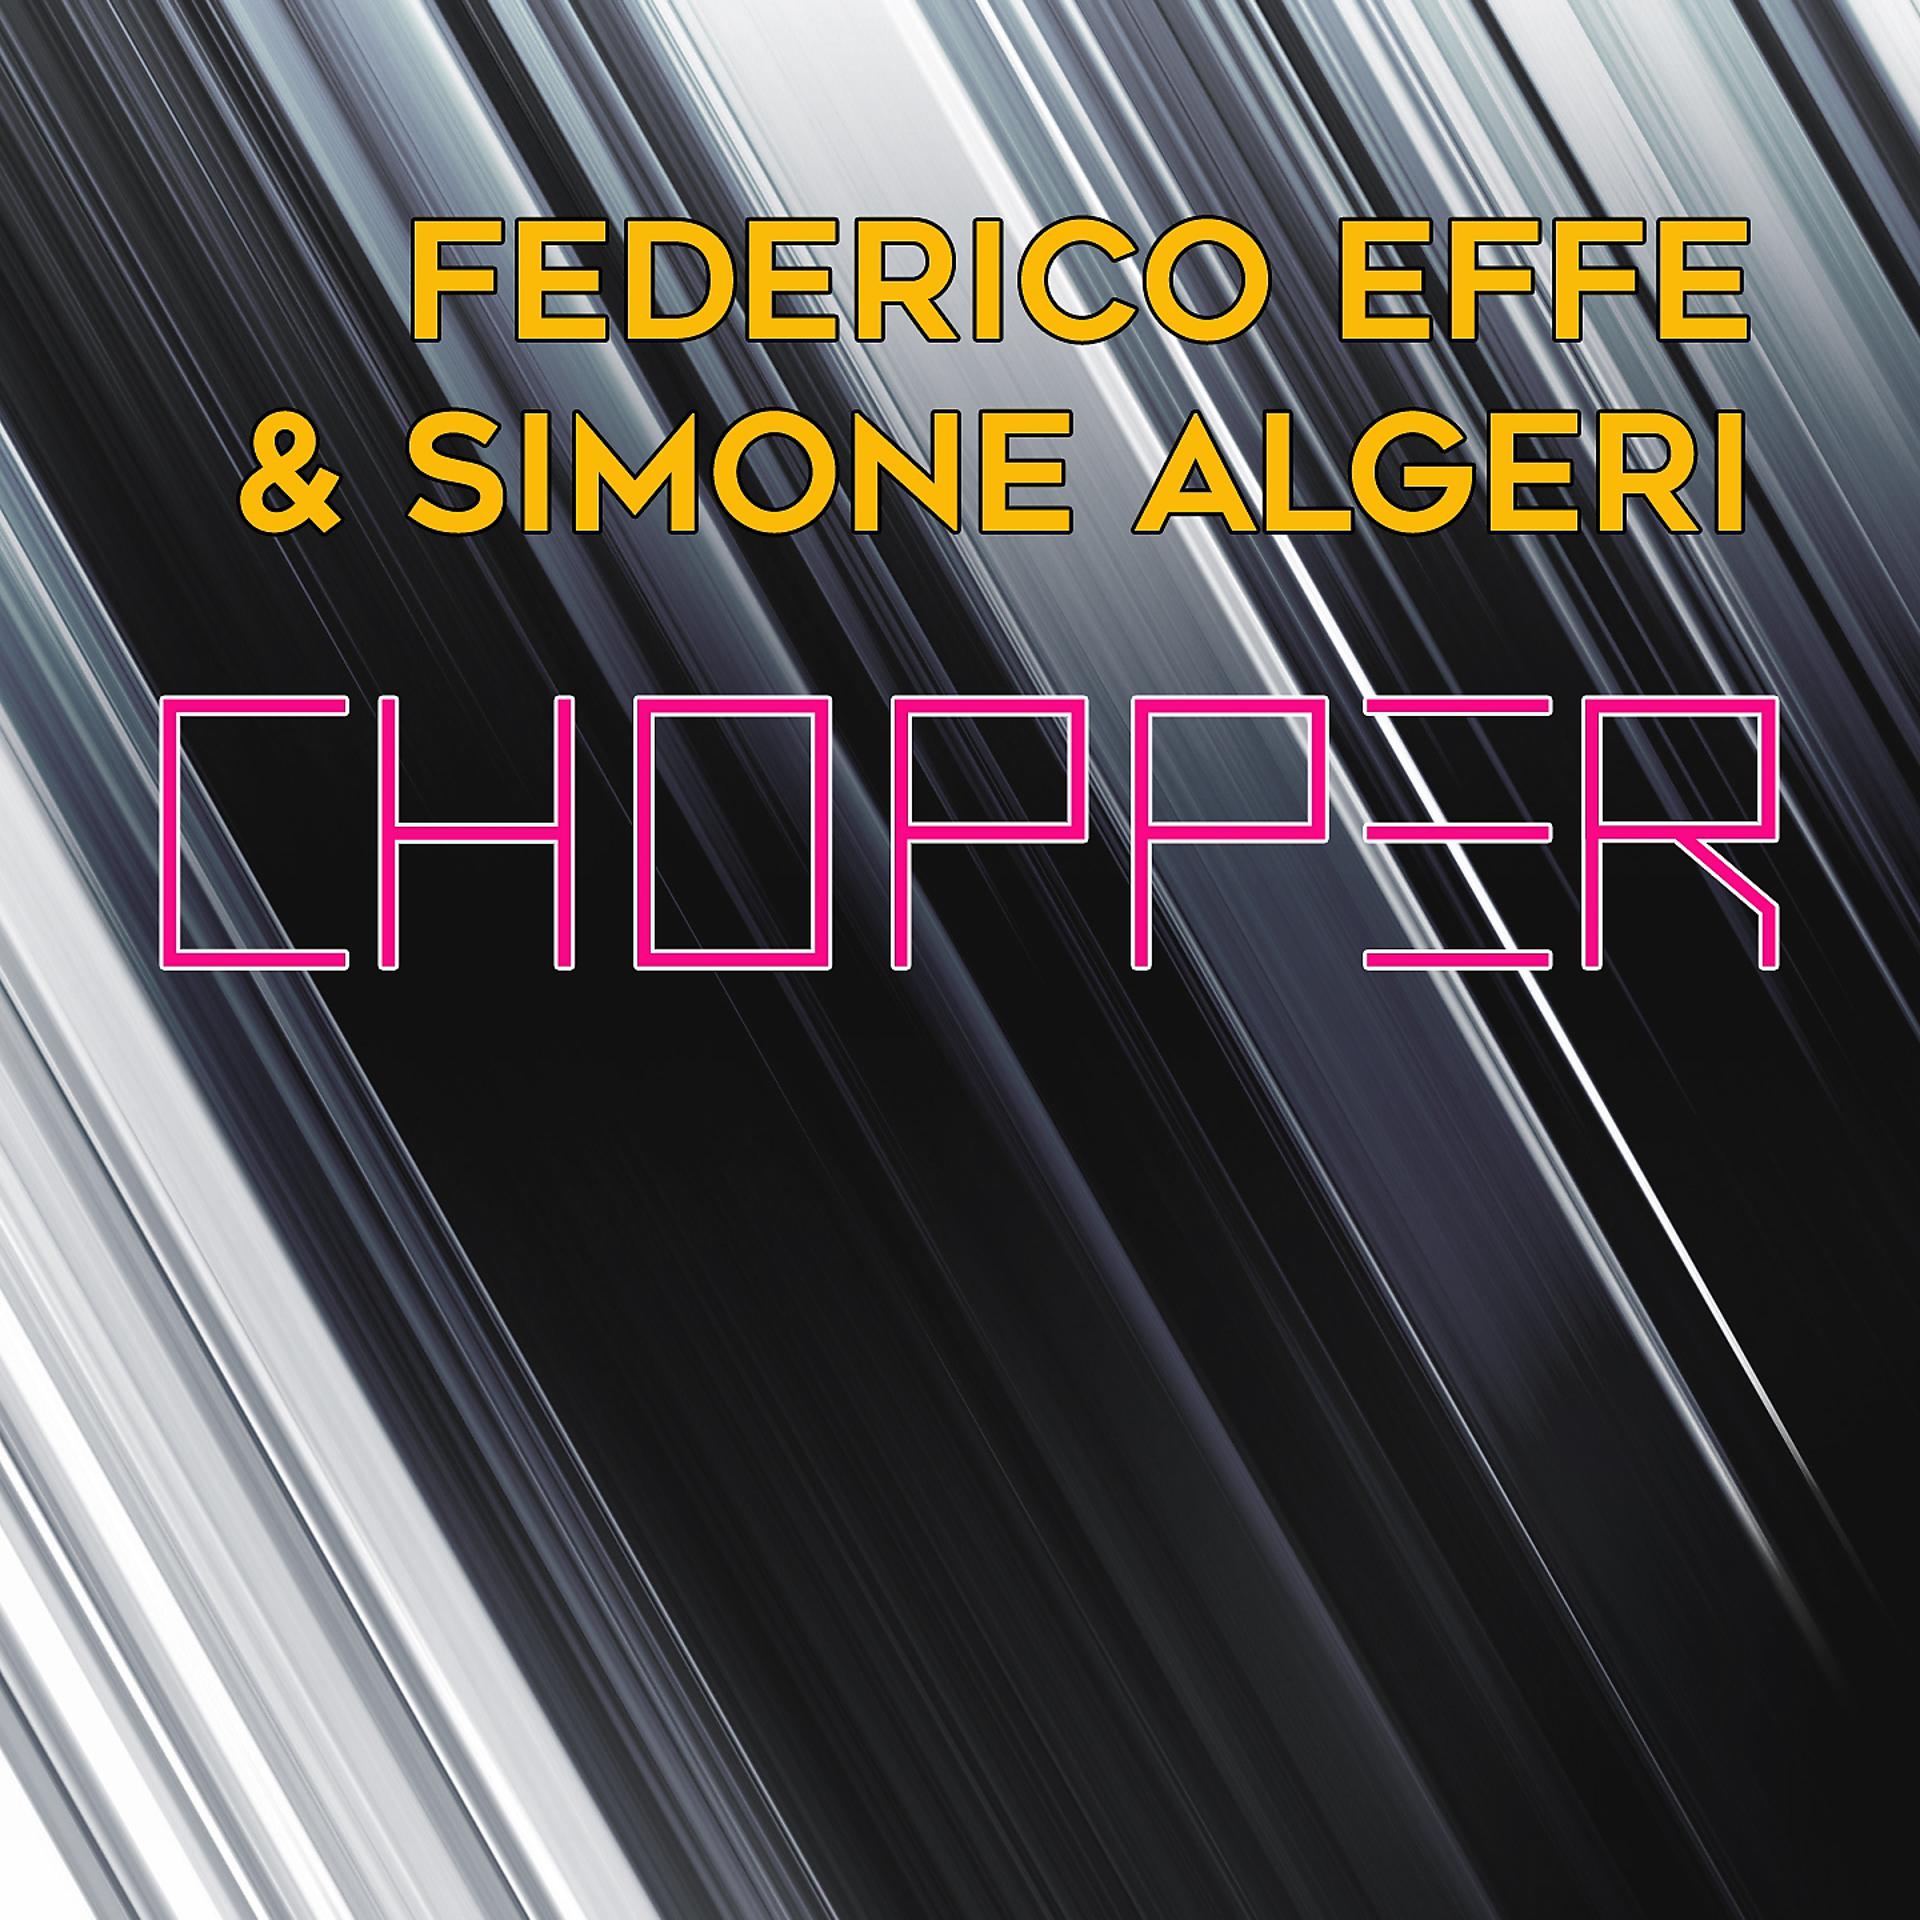 Постер альбома Chopper